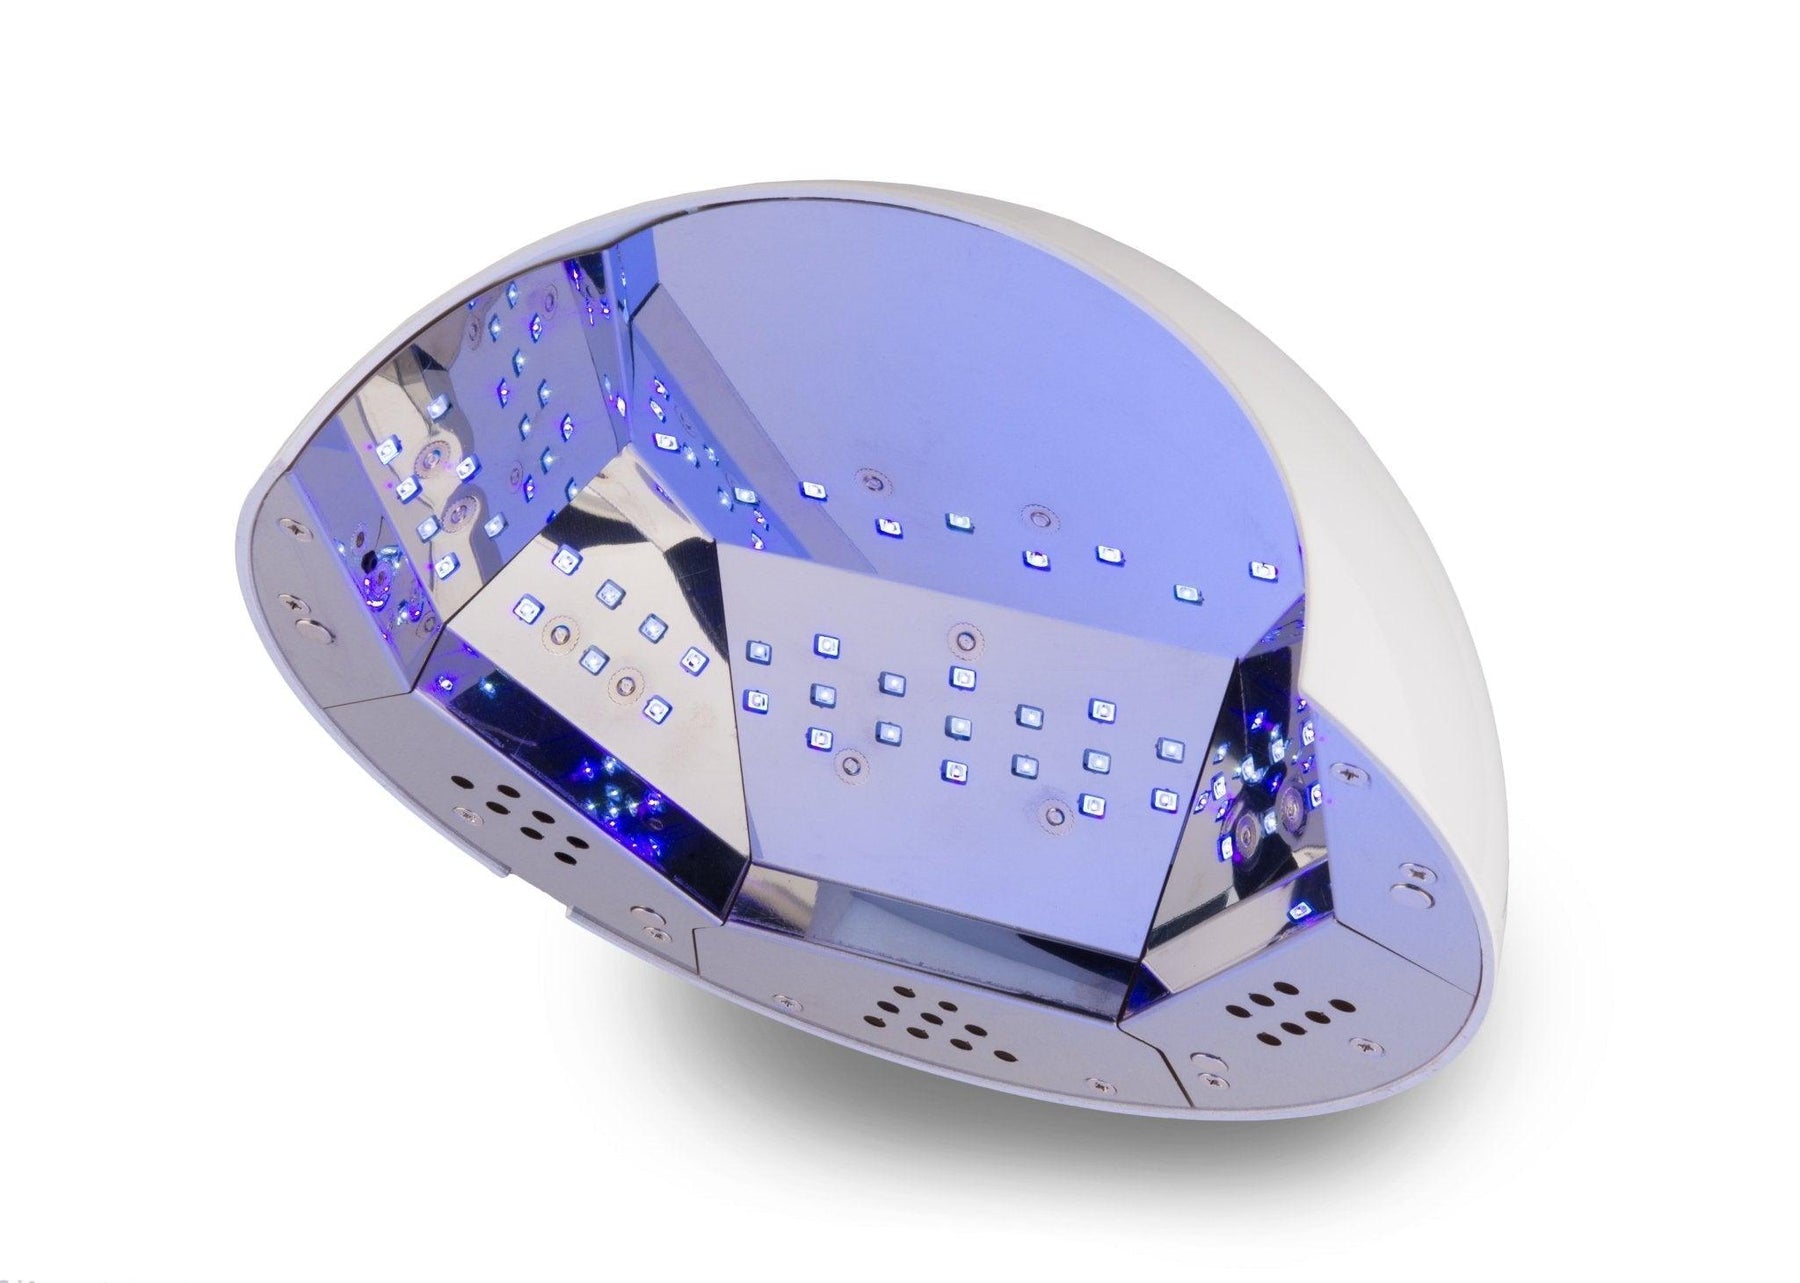 Light Elegance - LEDdot Gen3 UV Nail Lamp – The Nail Hub